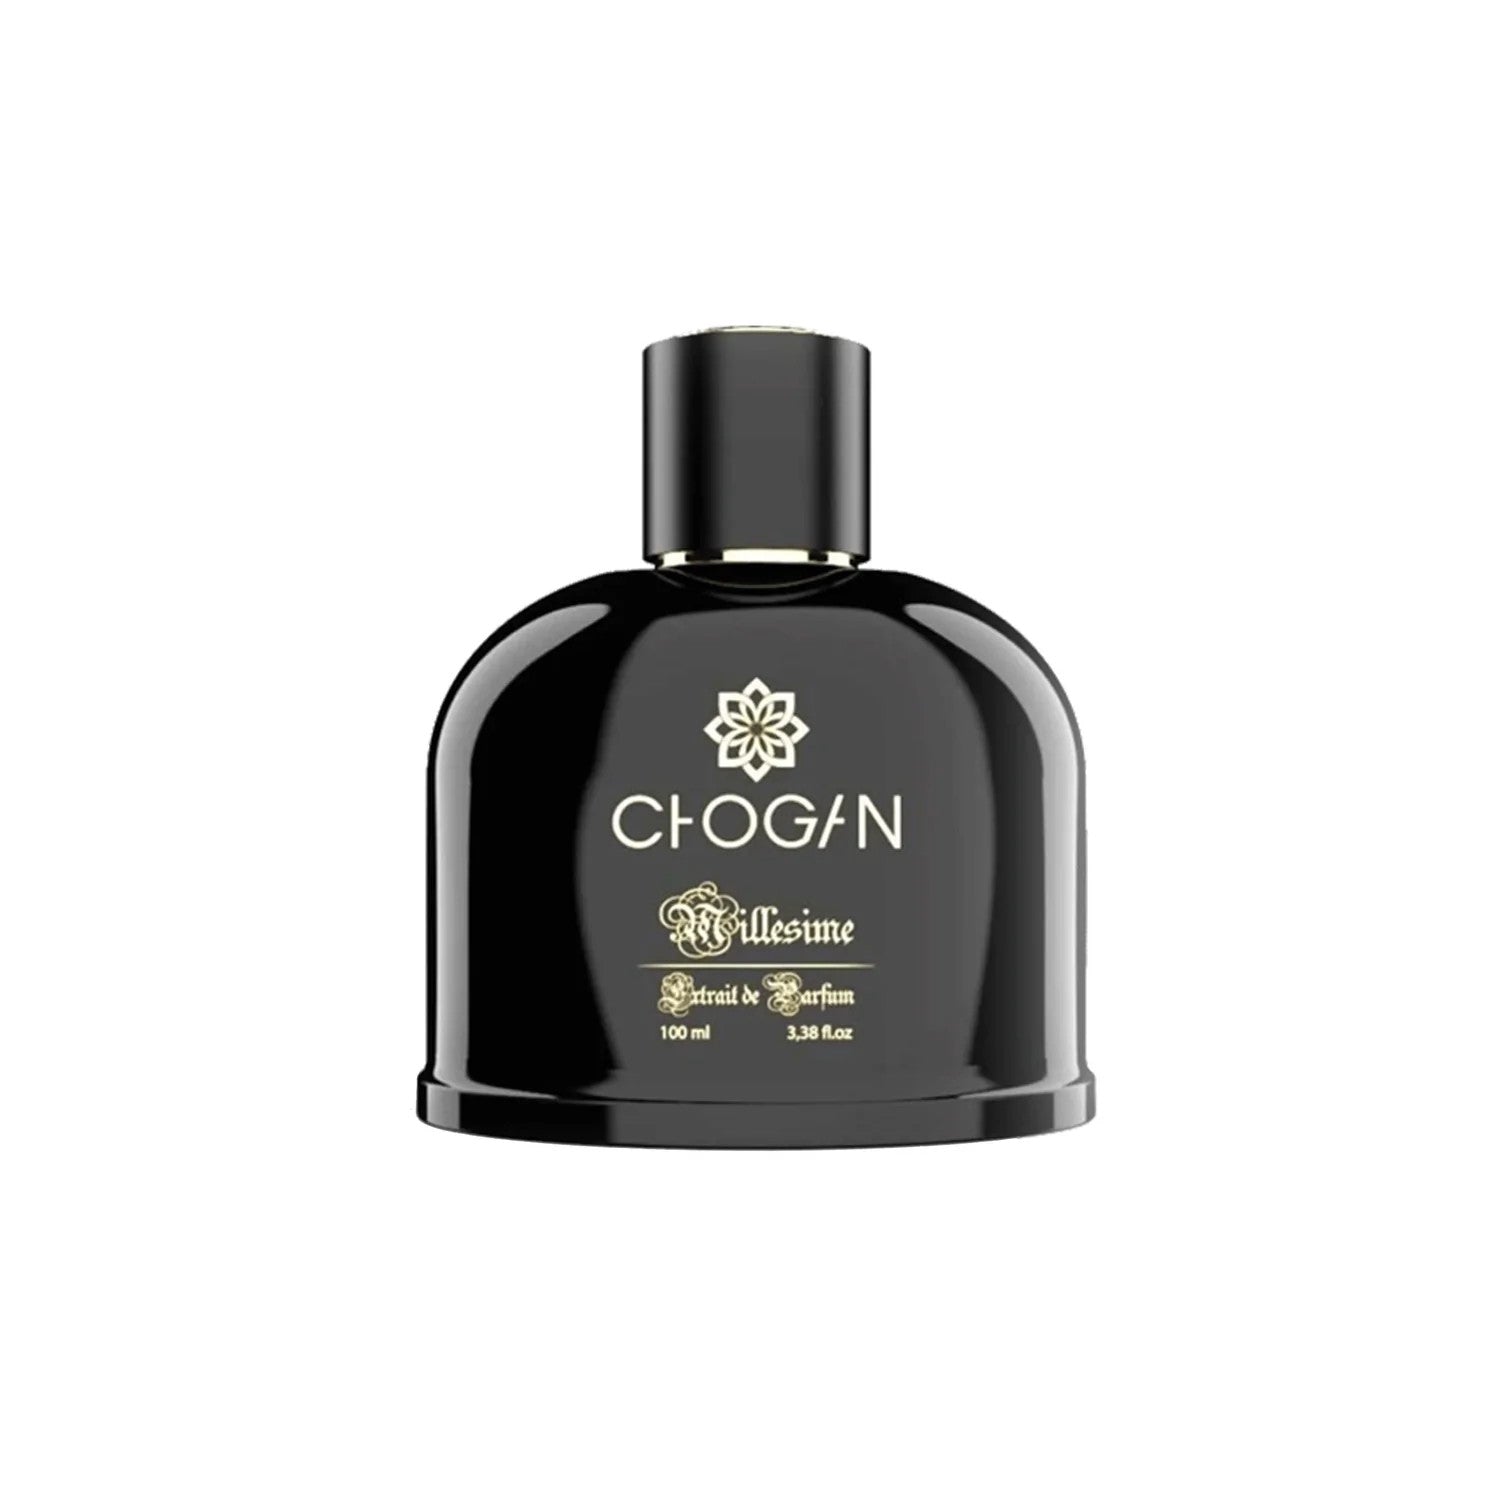 Unisex Parfüm - Chogan Nr. 114 **Ombre Nomade** - Sparfüm - Home of Fragrances